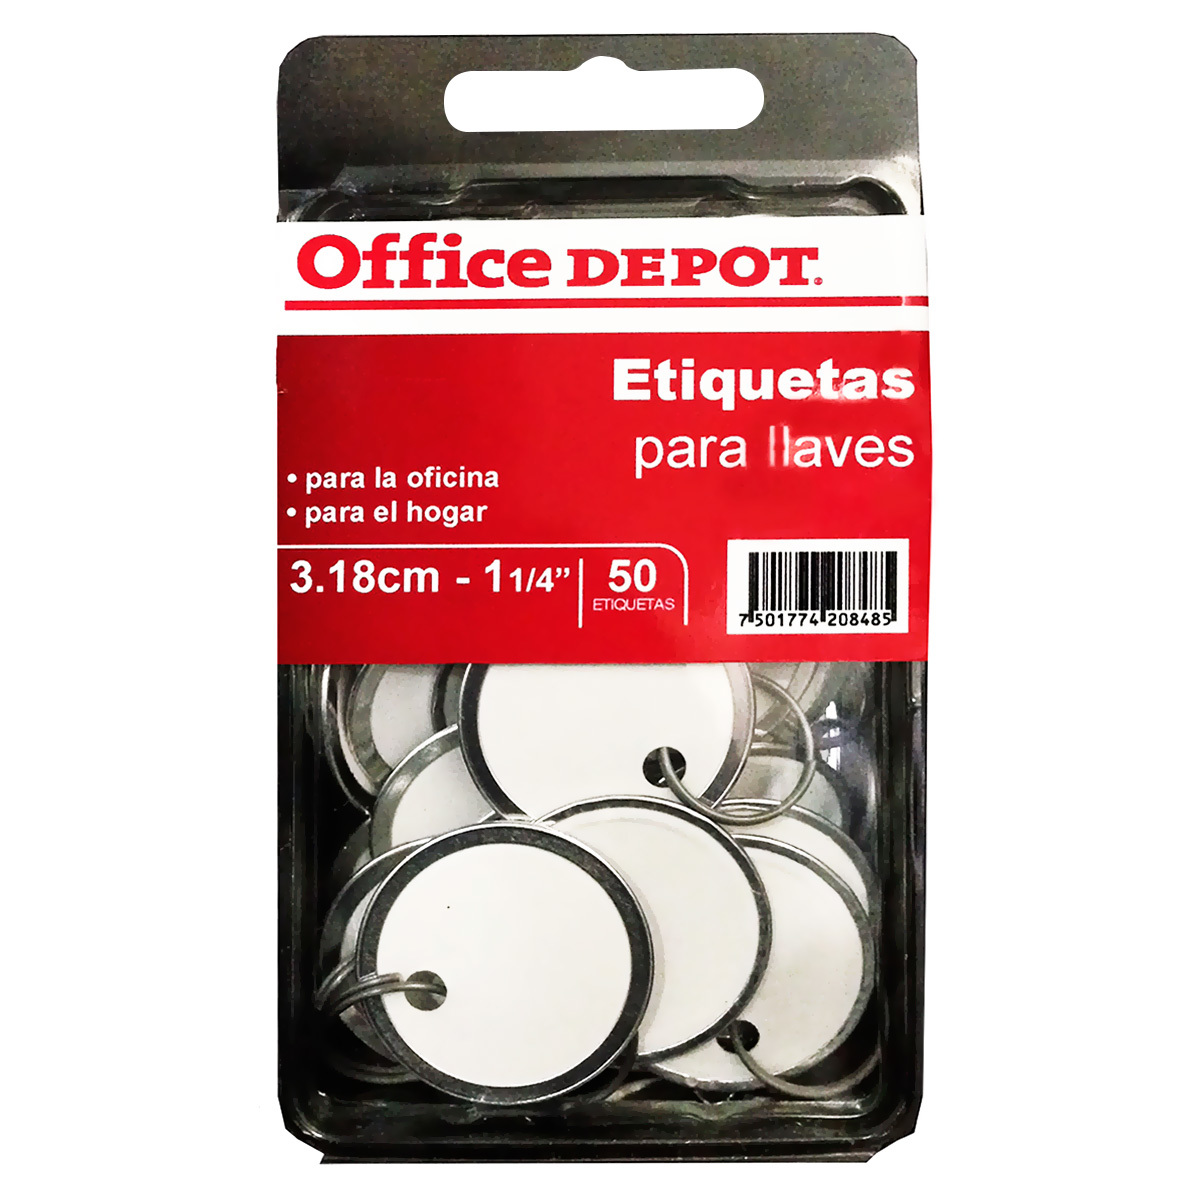 Etiquetas Circulares para Llaves Office Depot 3.18 mm 50 piezas